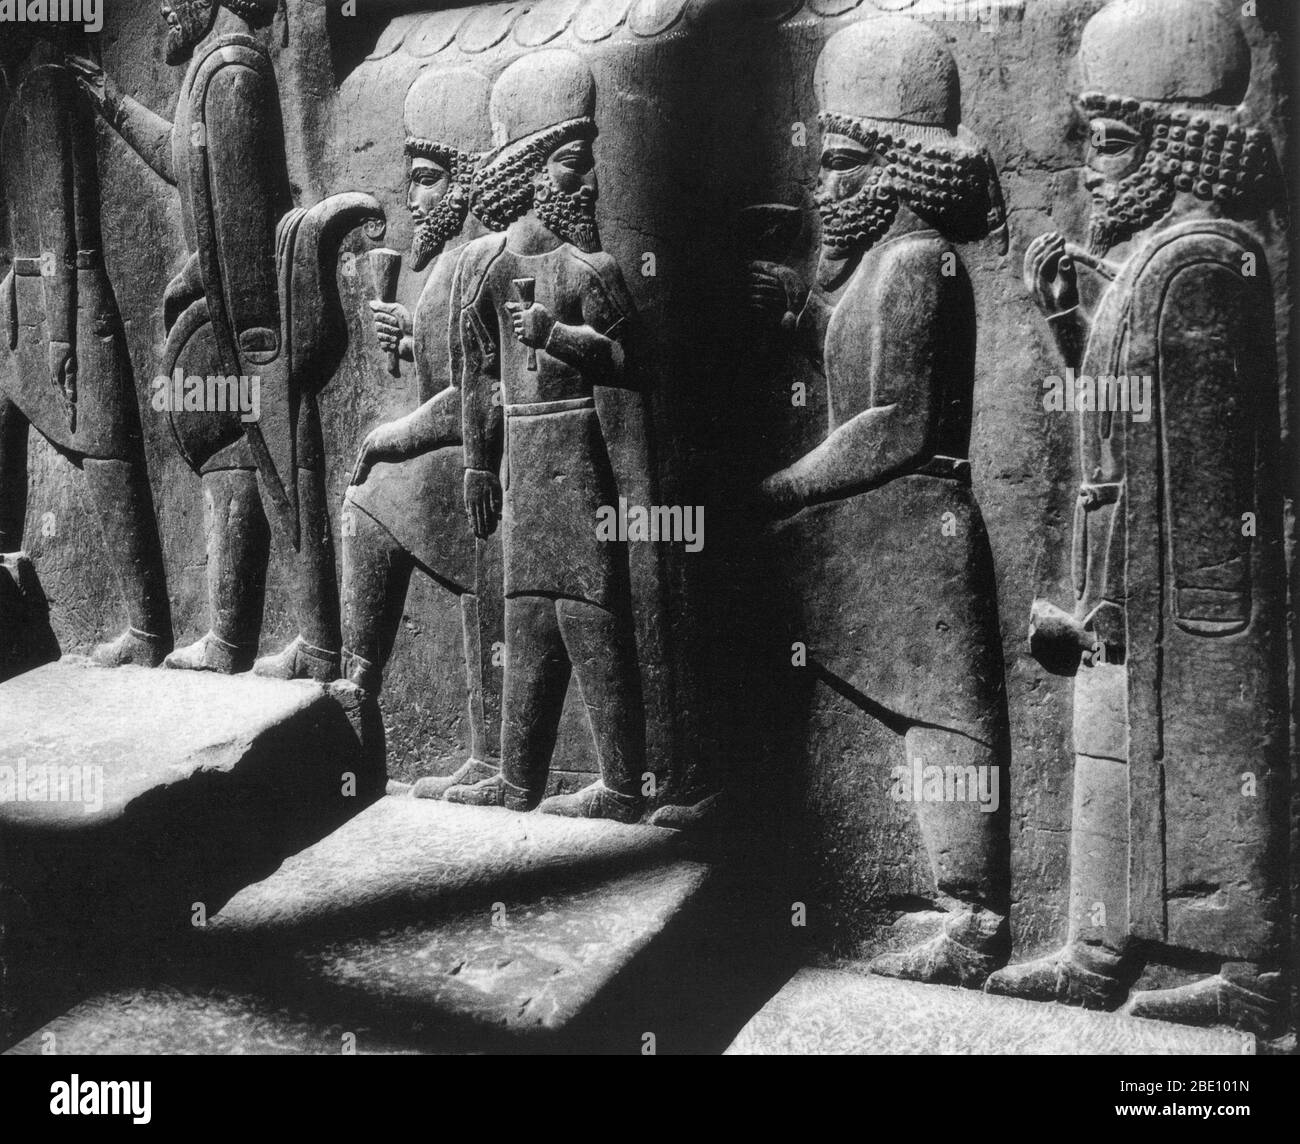 Les porteurs d'hommage dans un escalier de secours le long de la partie nord de la salle du Conseil (Tripylon), dans l'ancienne capitale de Perisan Persepolis, Iran, datant d'environ 500 avant J.-C.. Banque D'Images